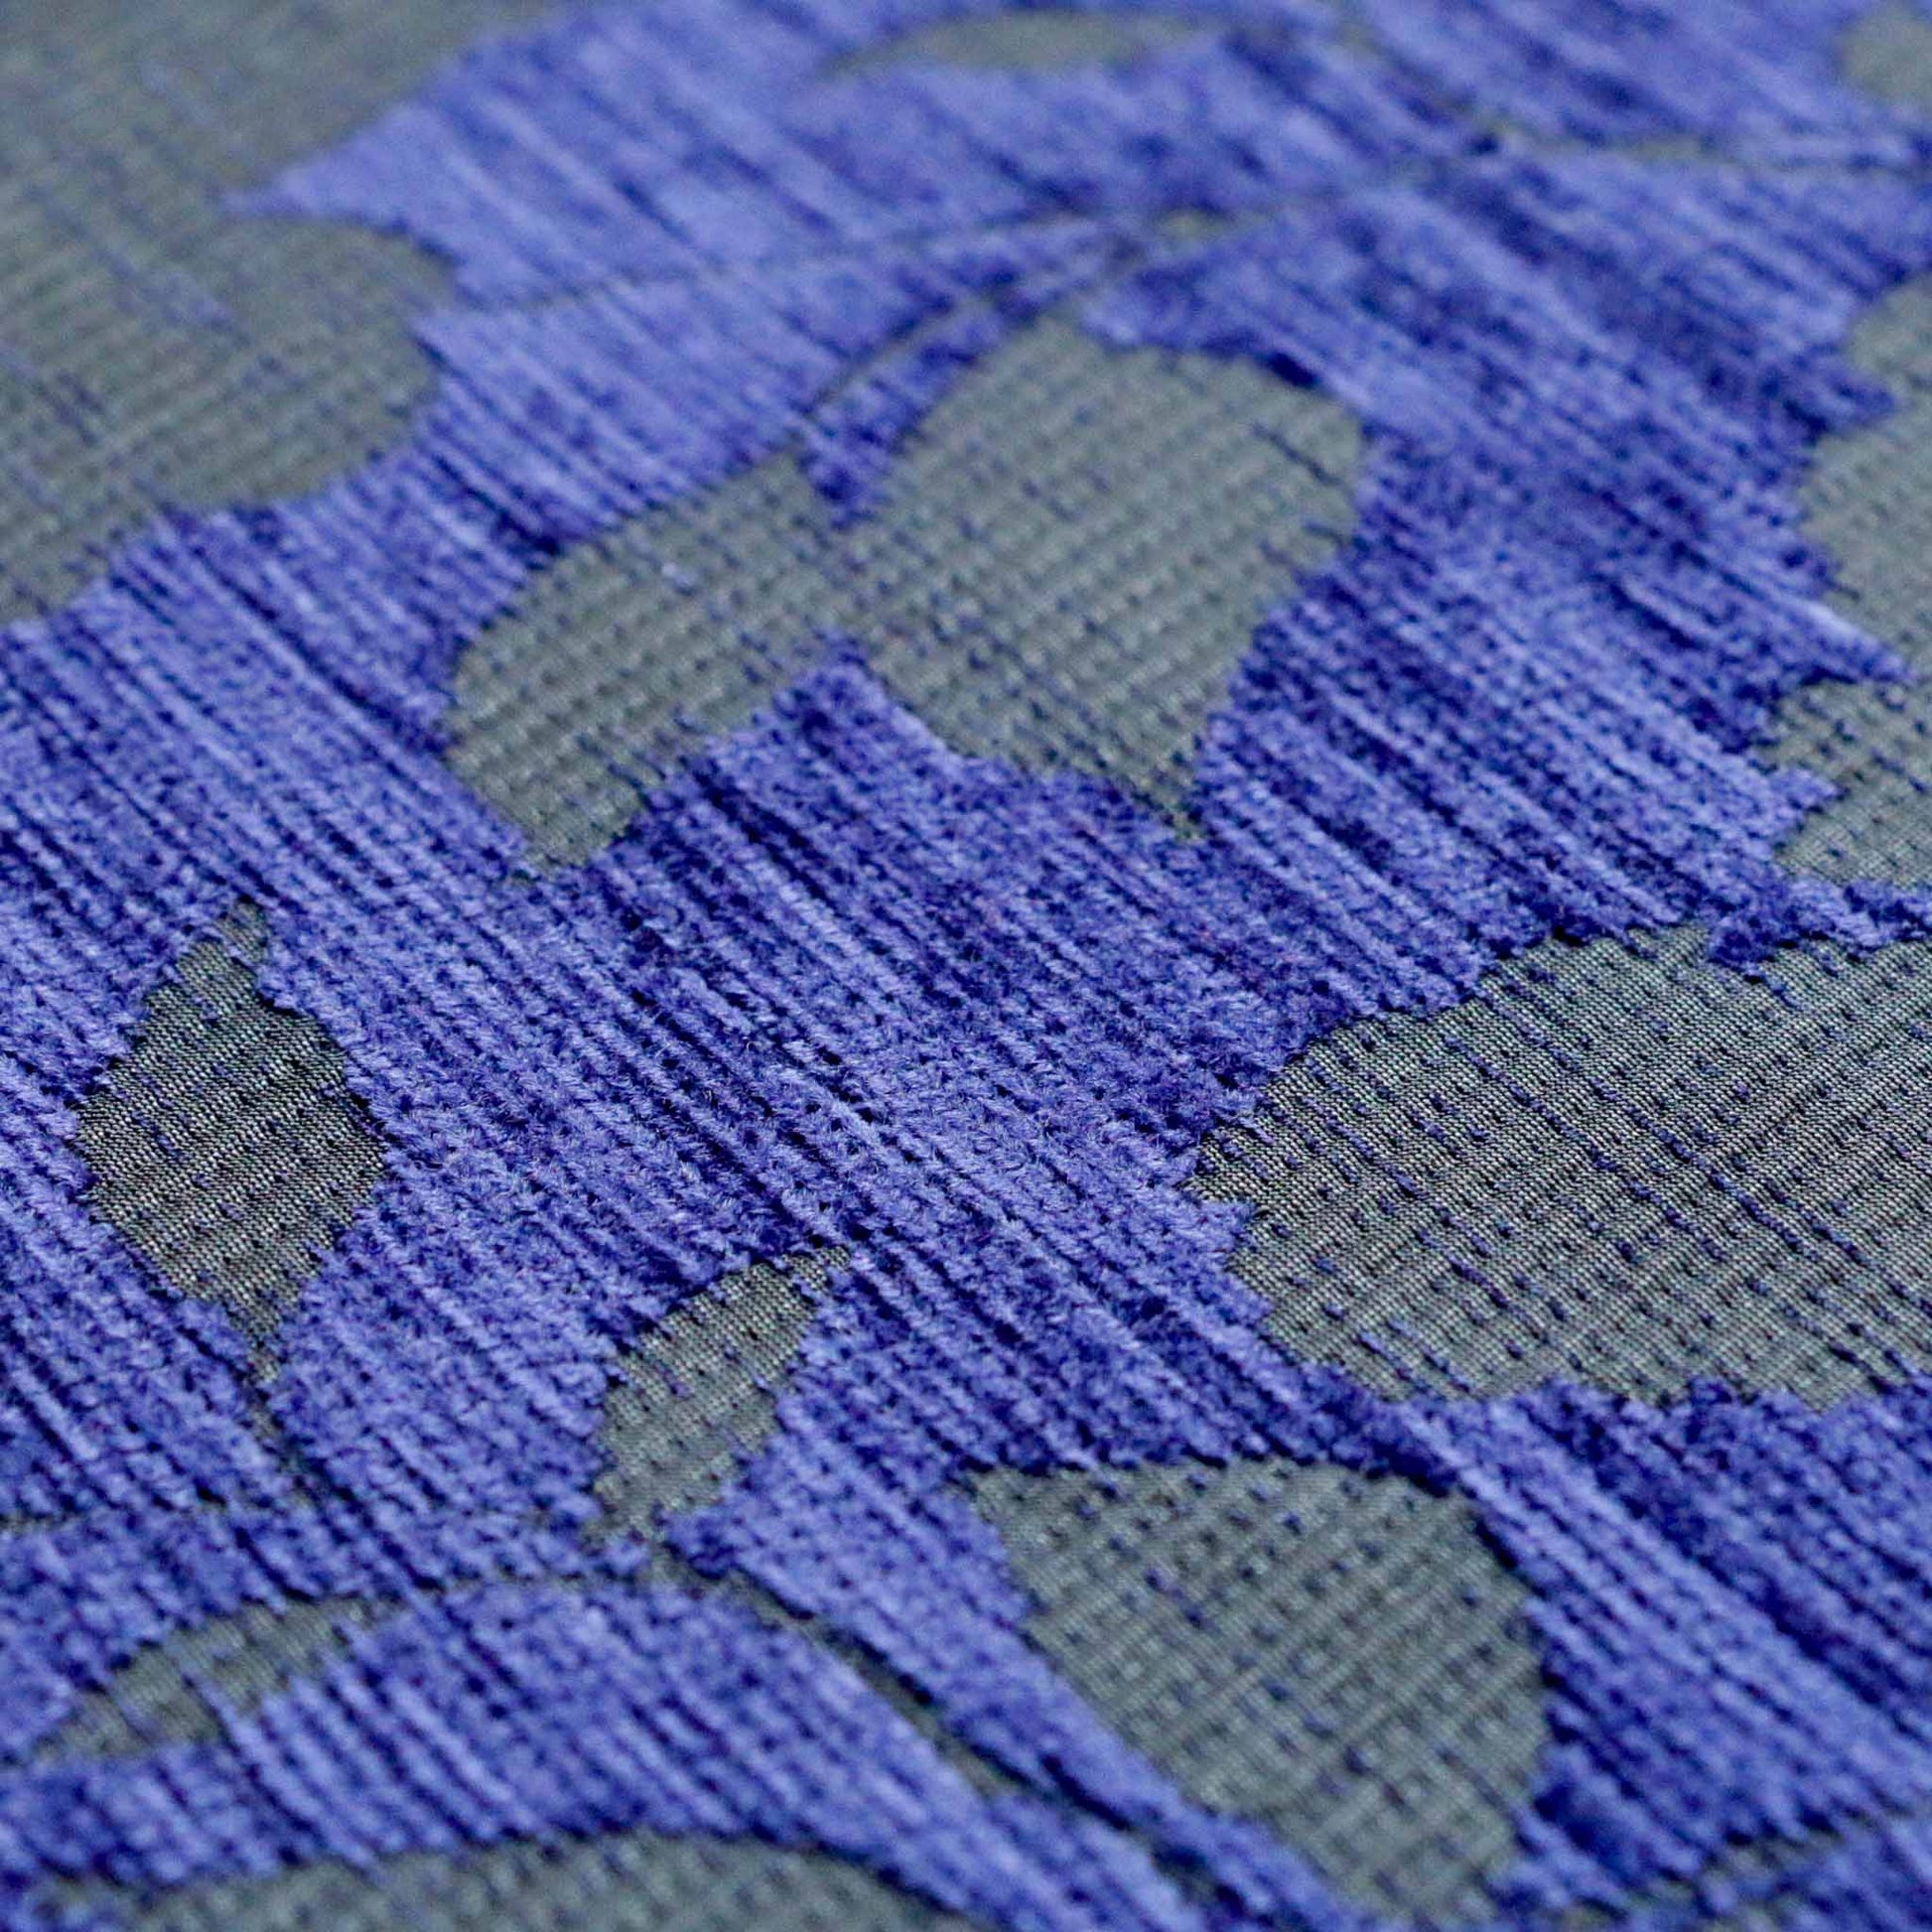 blue and black Chenille Jacquard velvet upholstery fabric with flower design